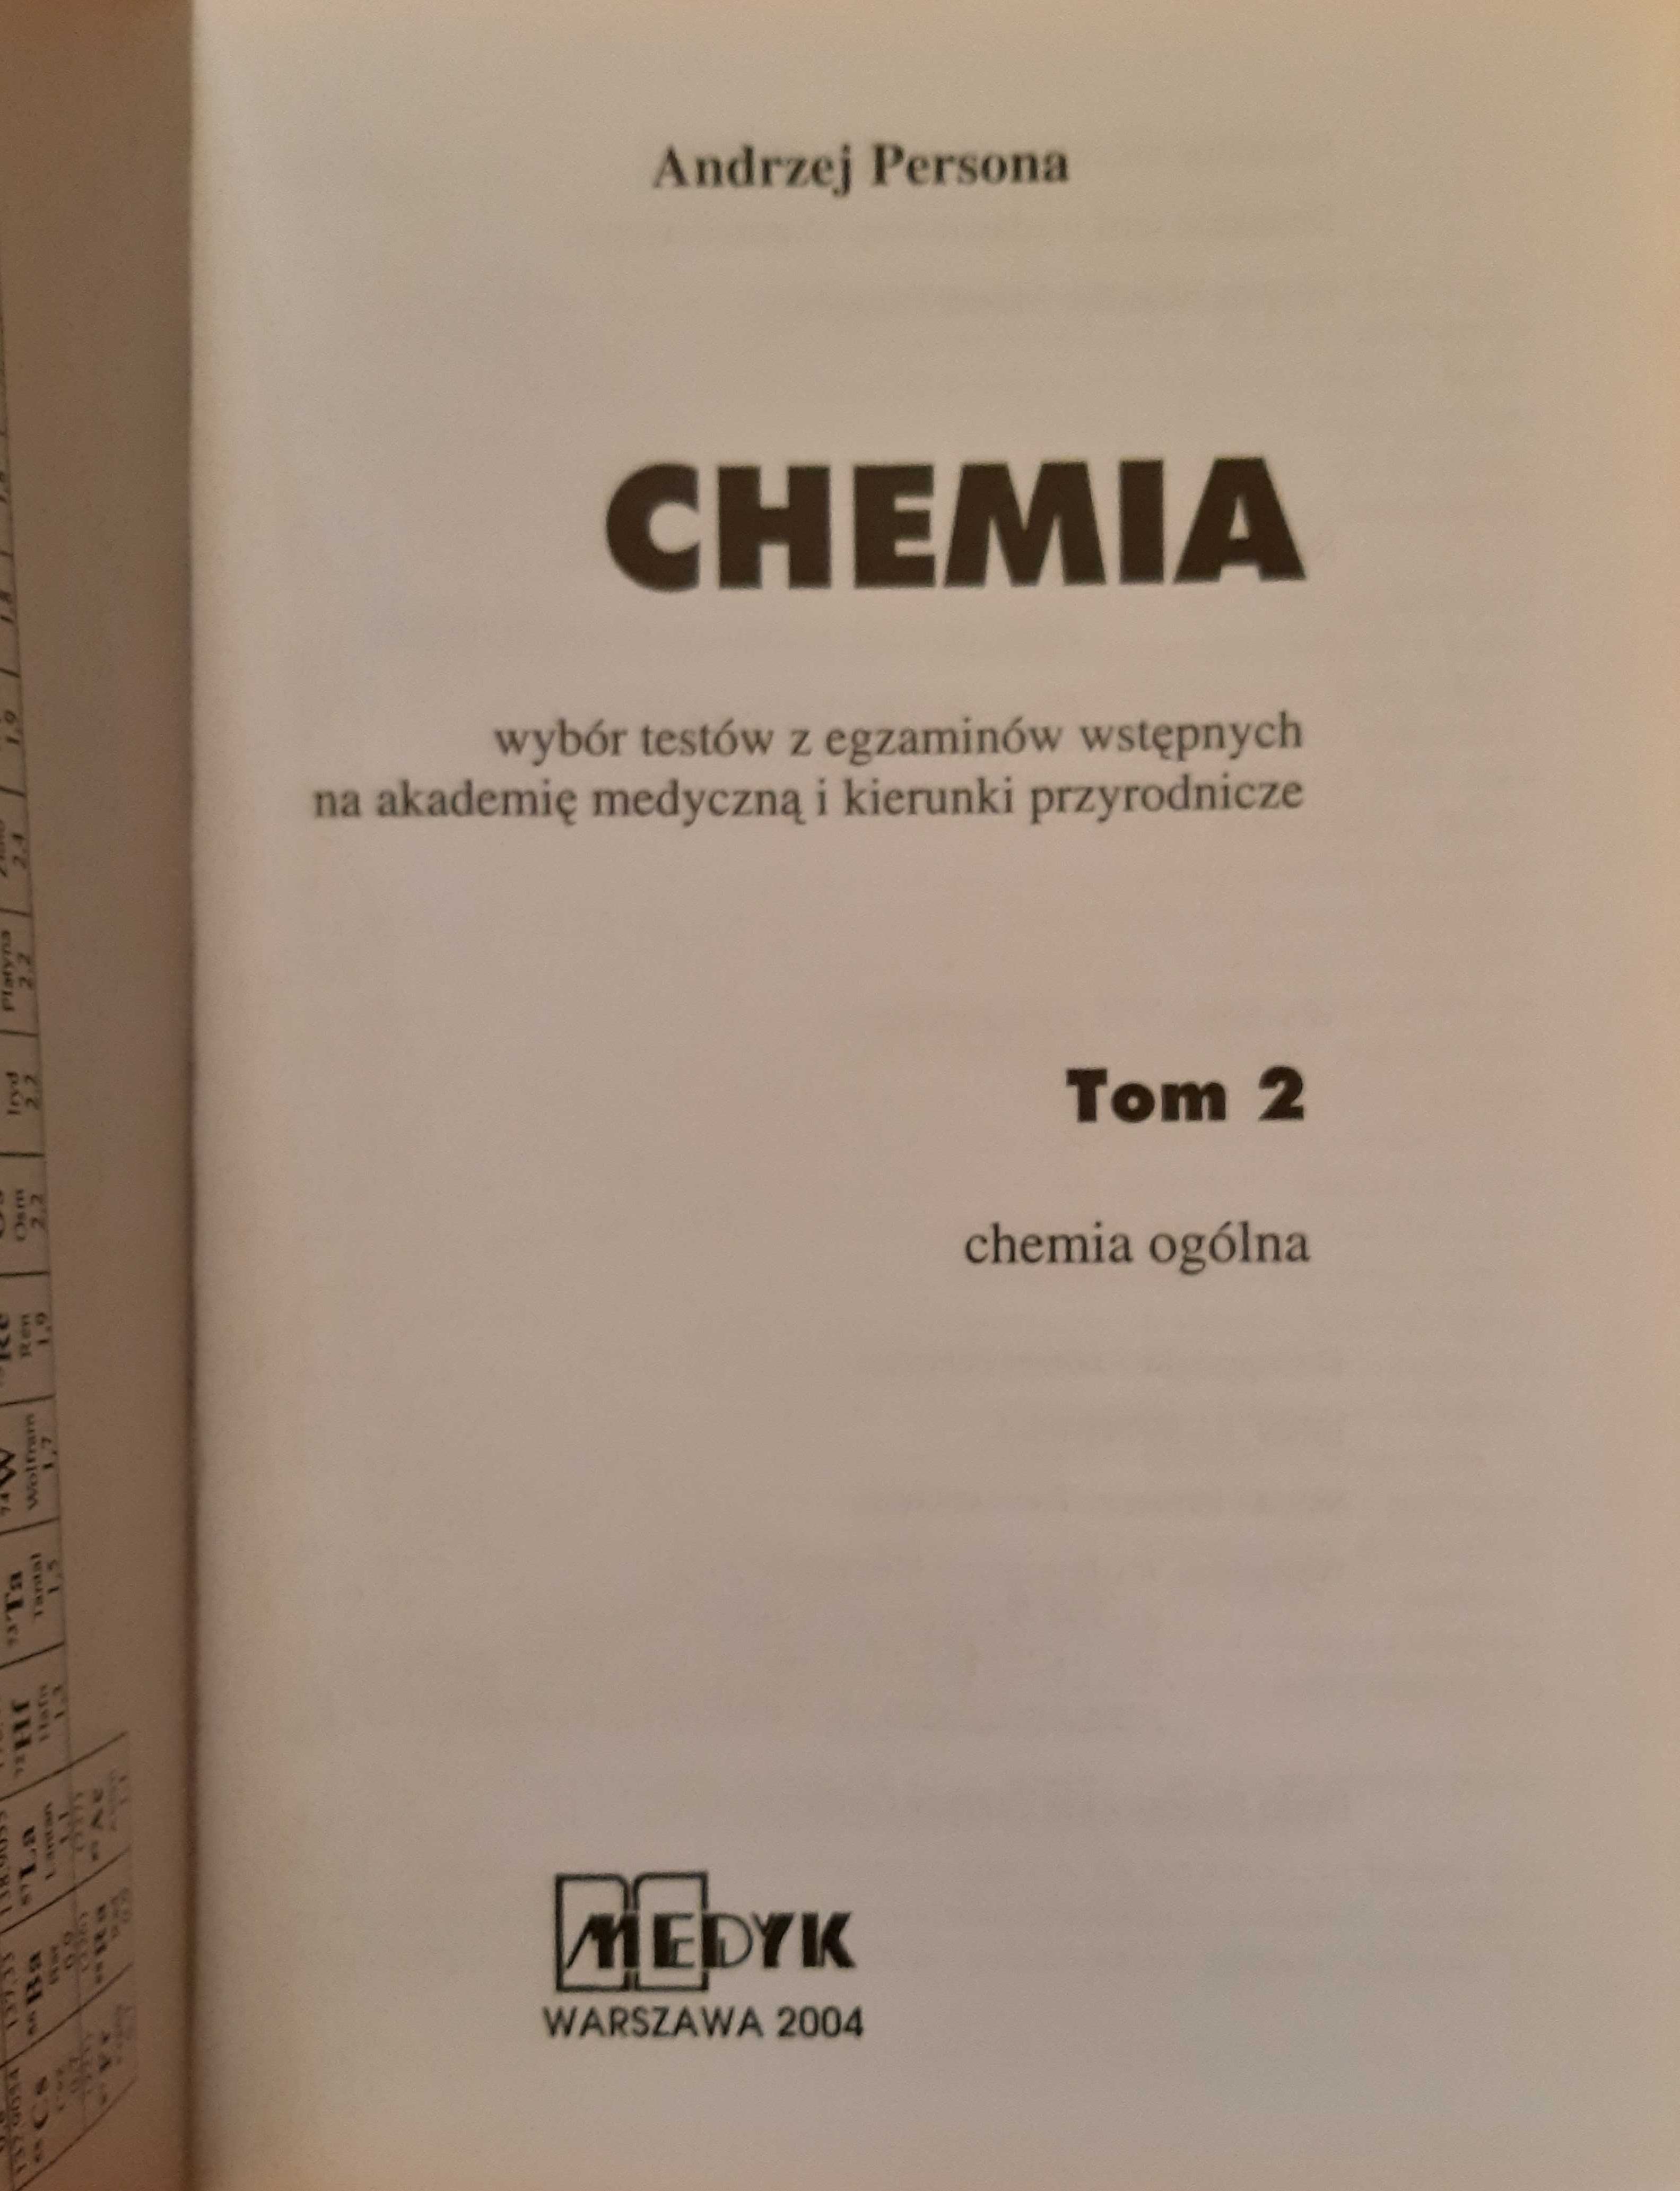 "Chemia. Wybór testów z egzaminów wstępnych na akademię..." 2 tomy